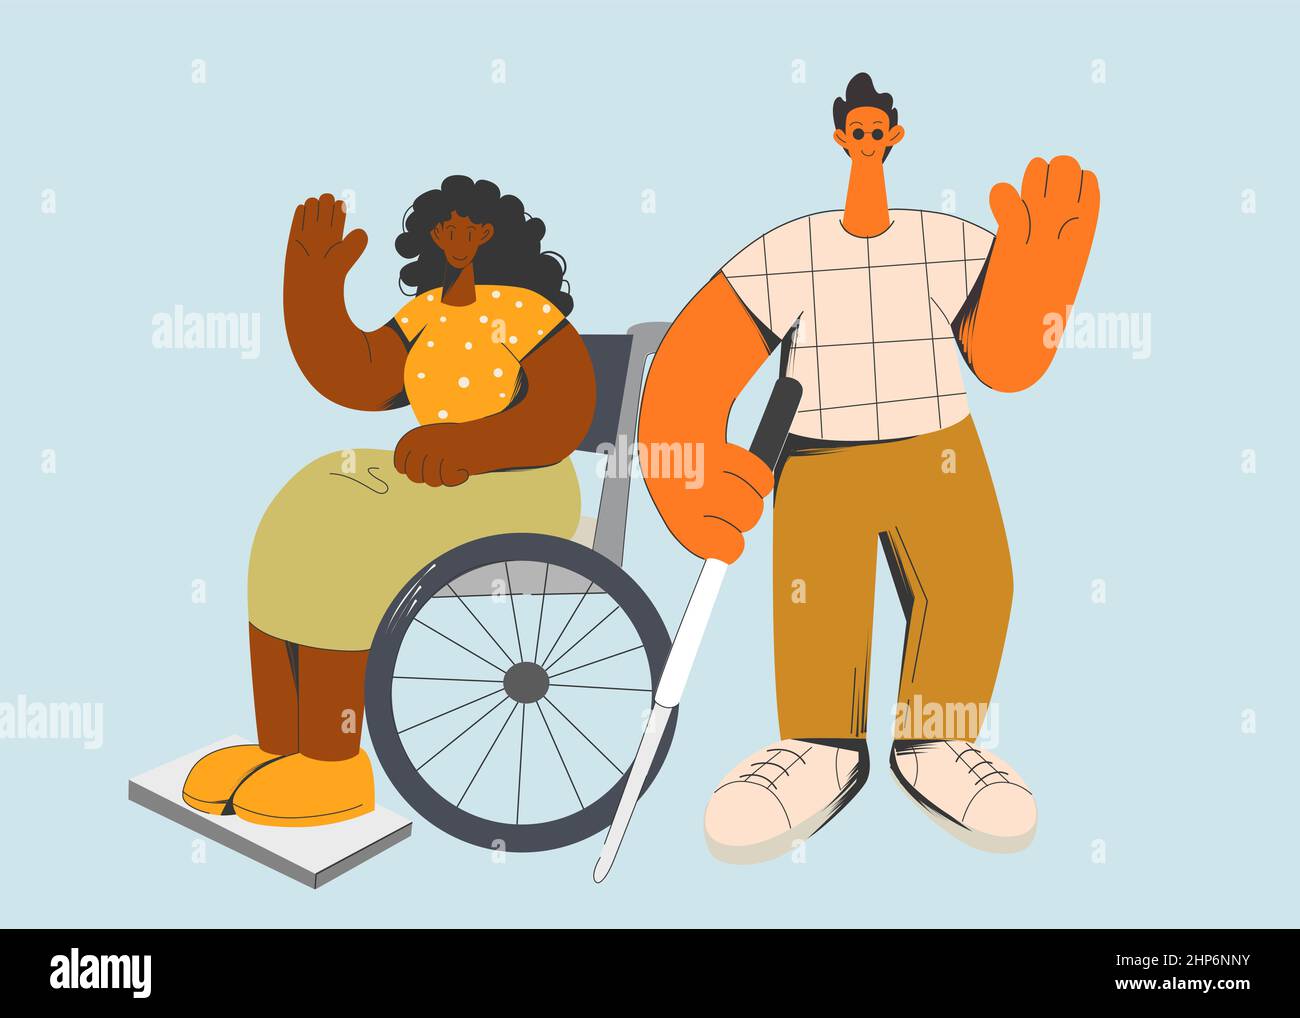 Heureux optimiste personnes handicapées aiment la vie quotidienne Illustration de Vecteur